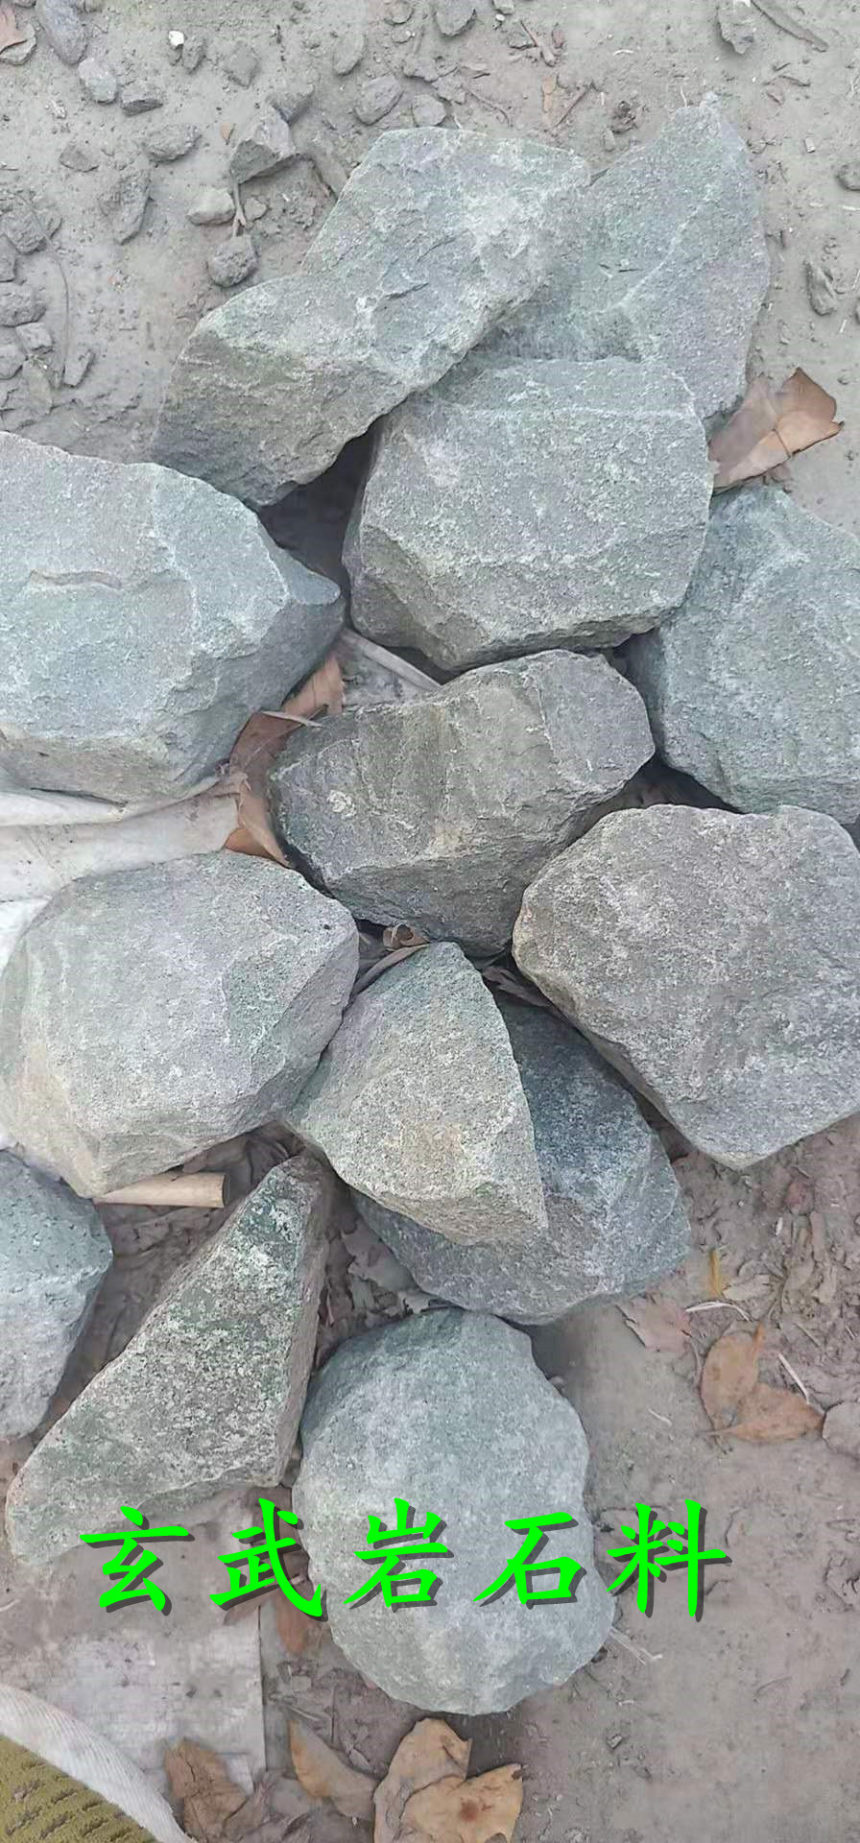 花岗岩石料商丘多少钱一立方米展飞公司